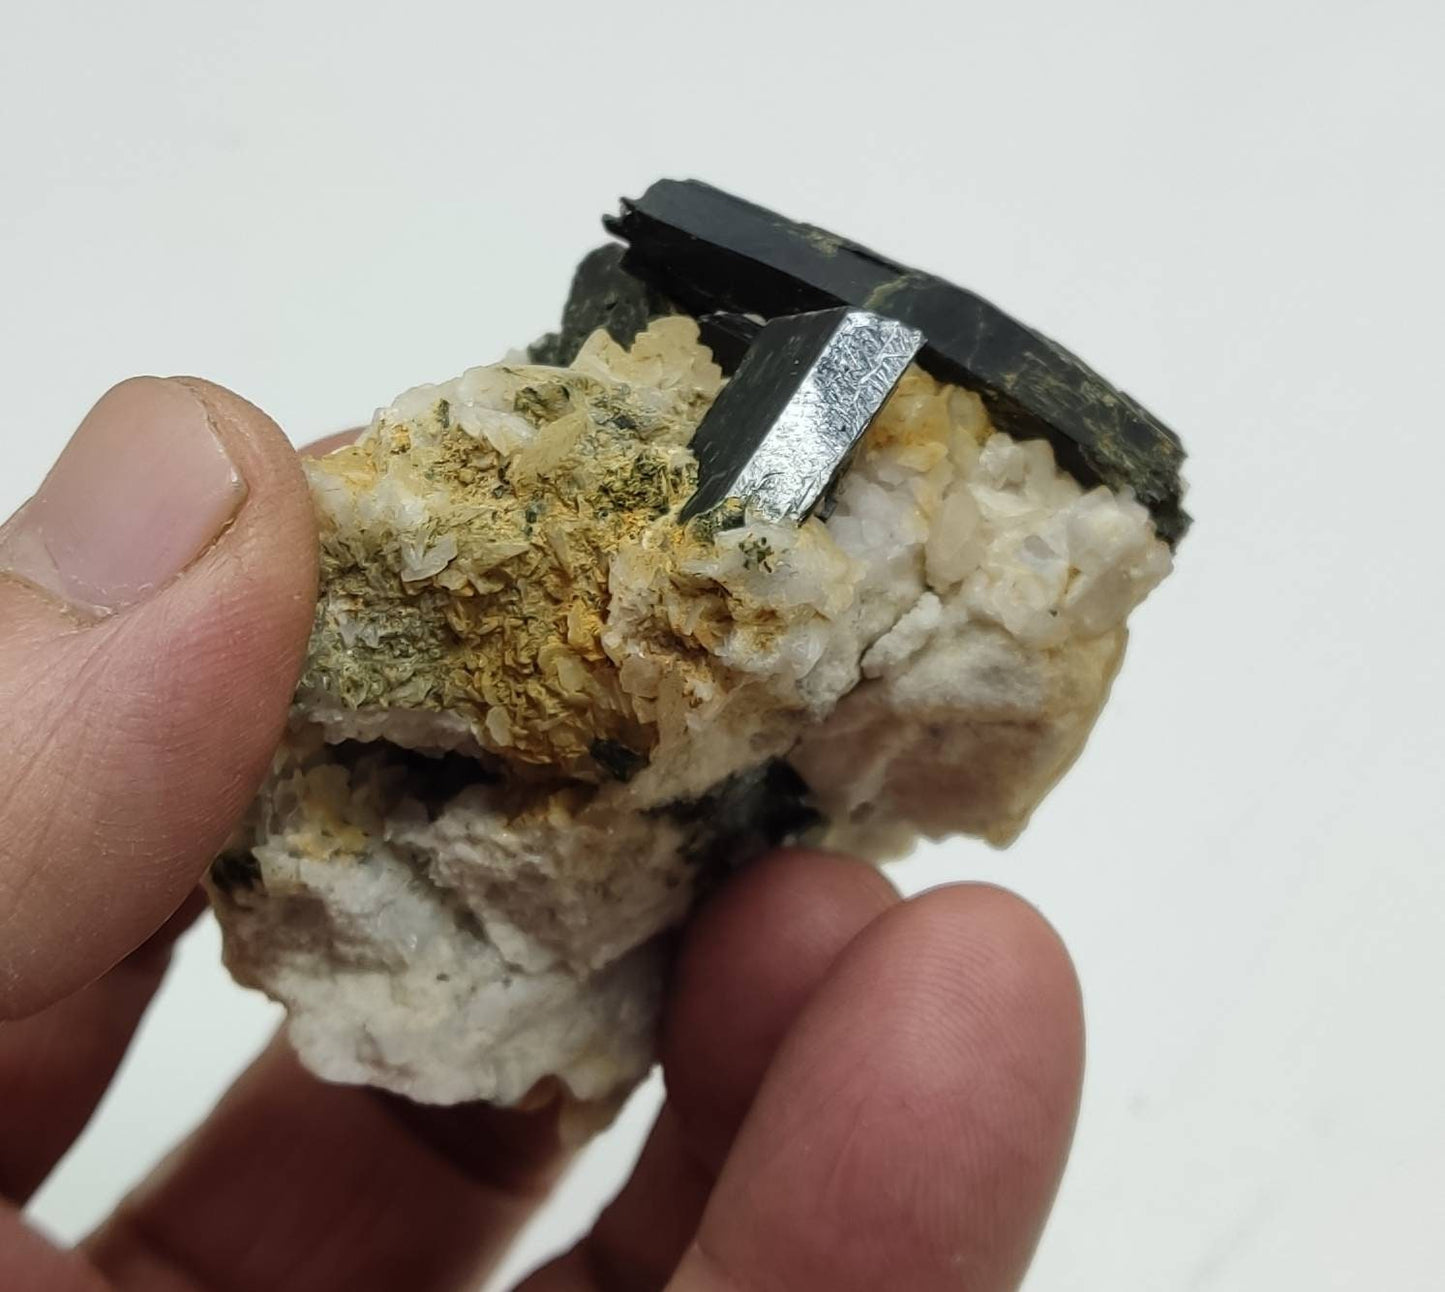 Single beautiful aesthetic aegirine crystals specimen with some calcite 94 grams